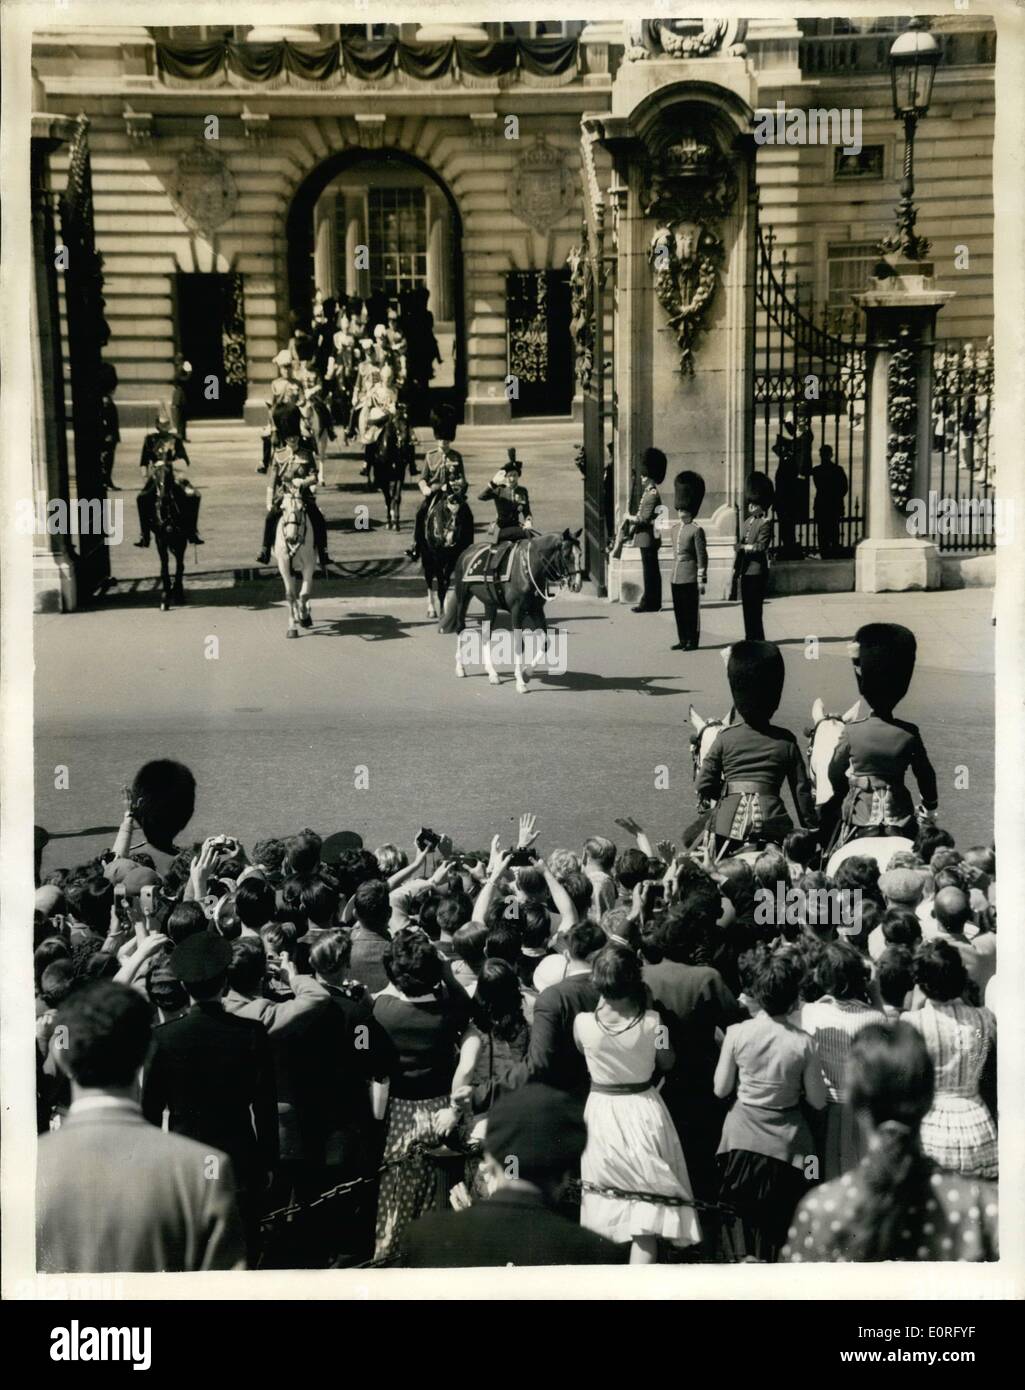 Juin 06, 1959 - La parade la cérémonie des couleurs. Sa Majesté la Reine a pris le salut dans la Horse Guards Parade Parade à la cérémonie des couleurs, organisée à l'occasion de son anniversaire officiel. Photo montre :- la scène comme Sa Majesté la Reine, vu saluer, à gauche le palais de Buckingham sur son chemin à la cérémonie. Banque D'Images